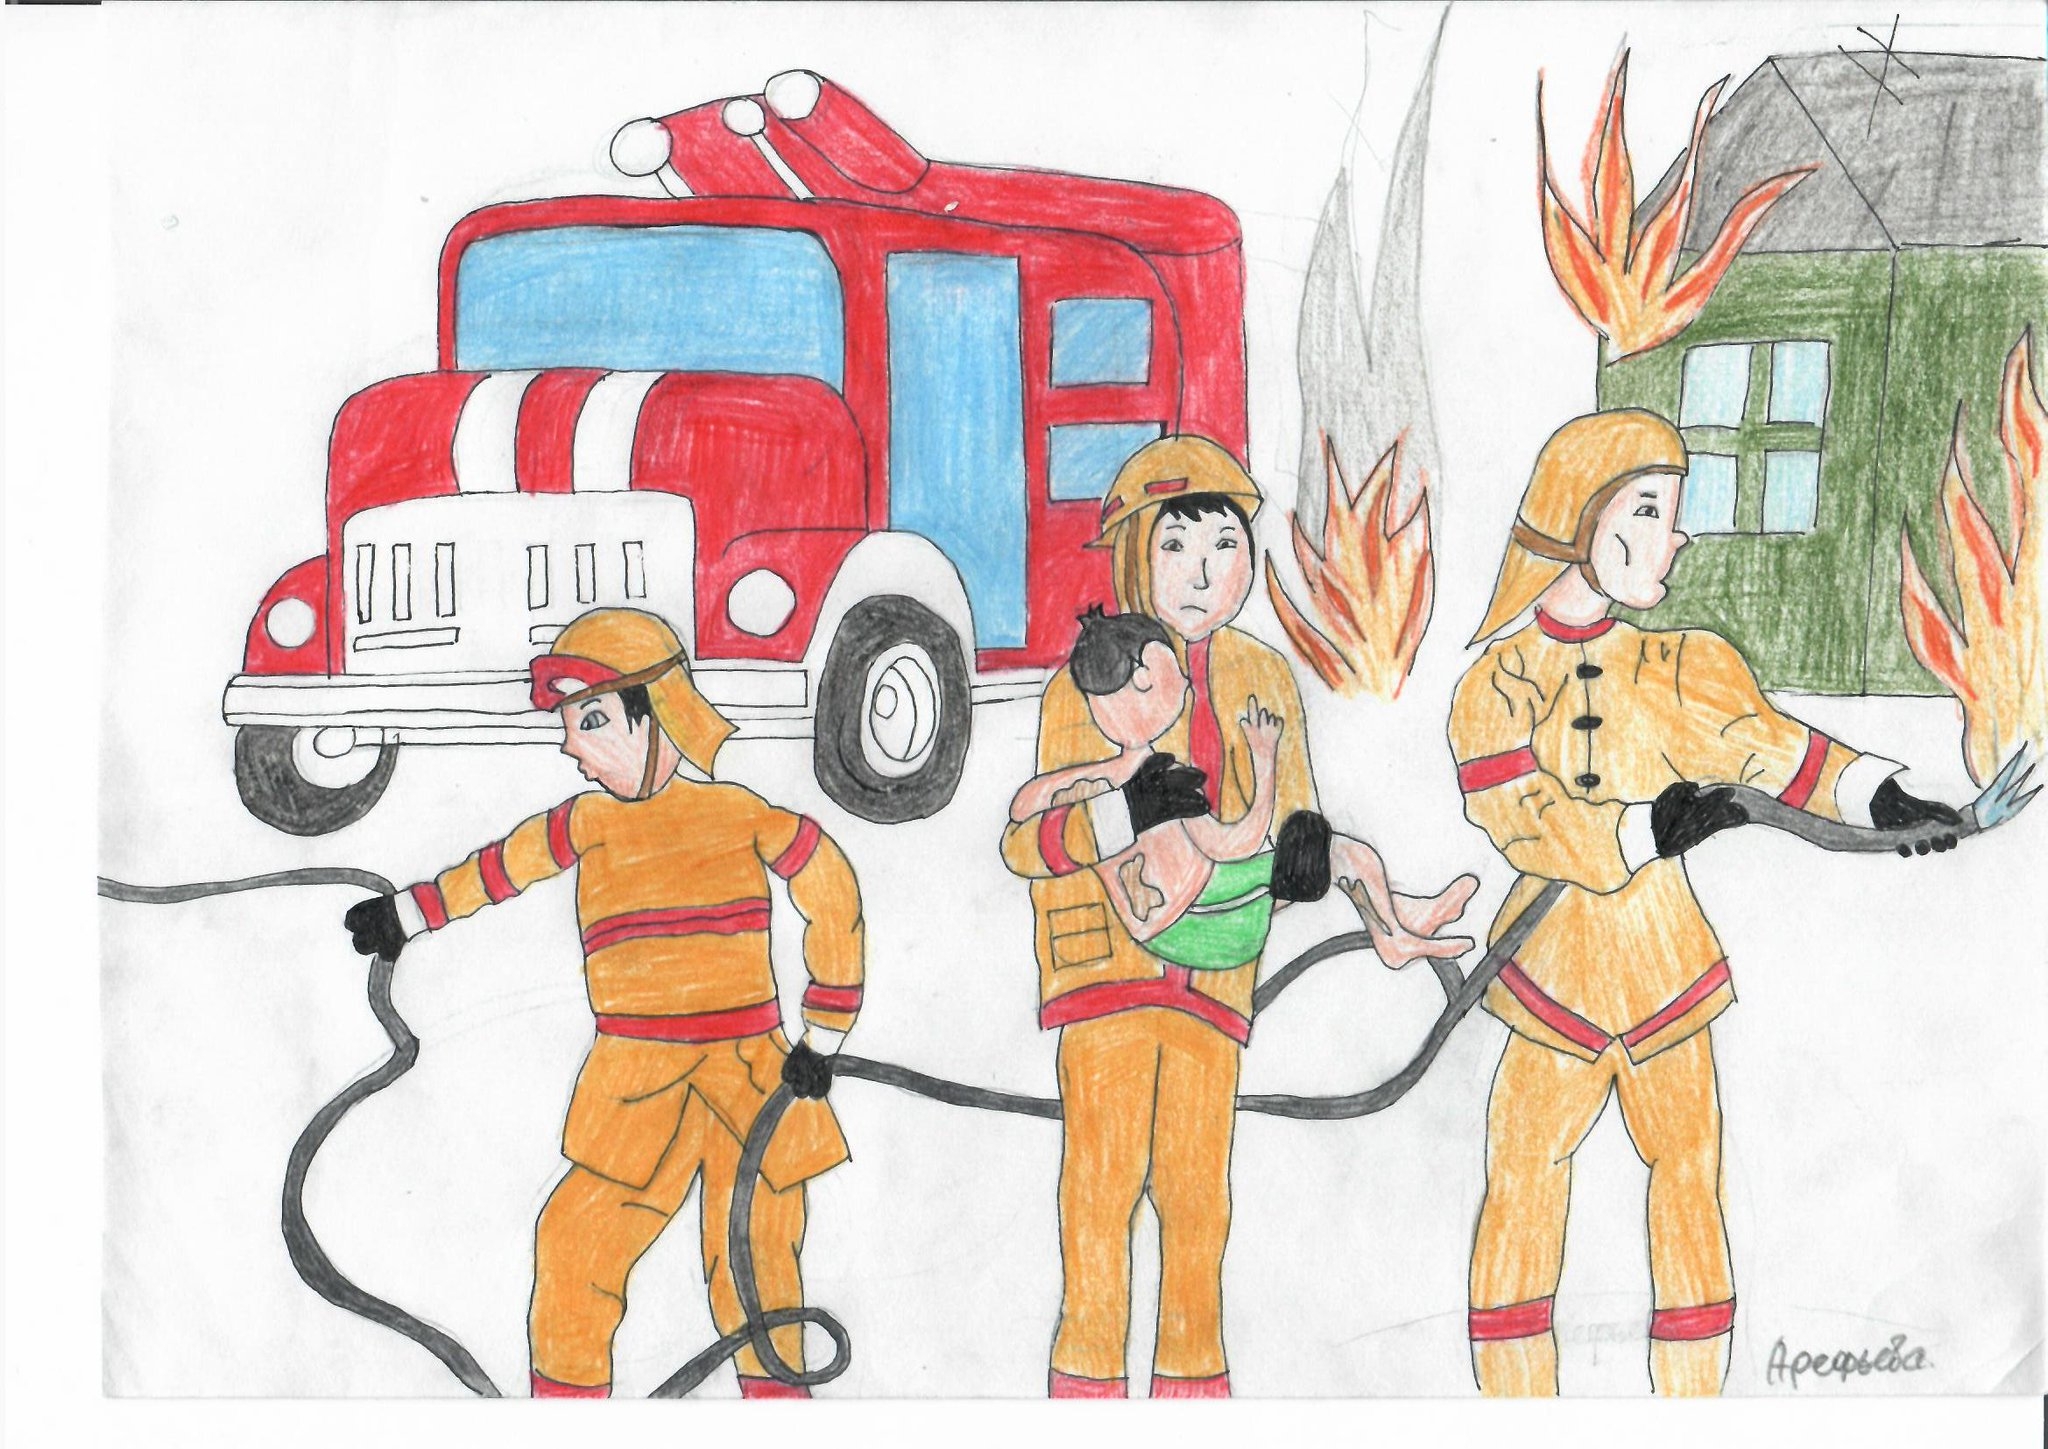 Пожарно спасательный класс